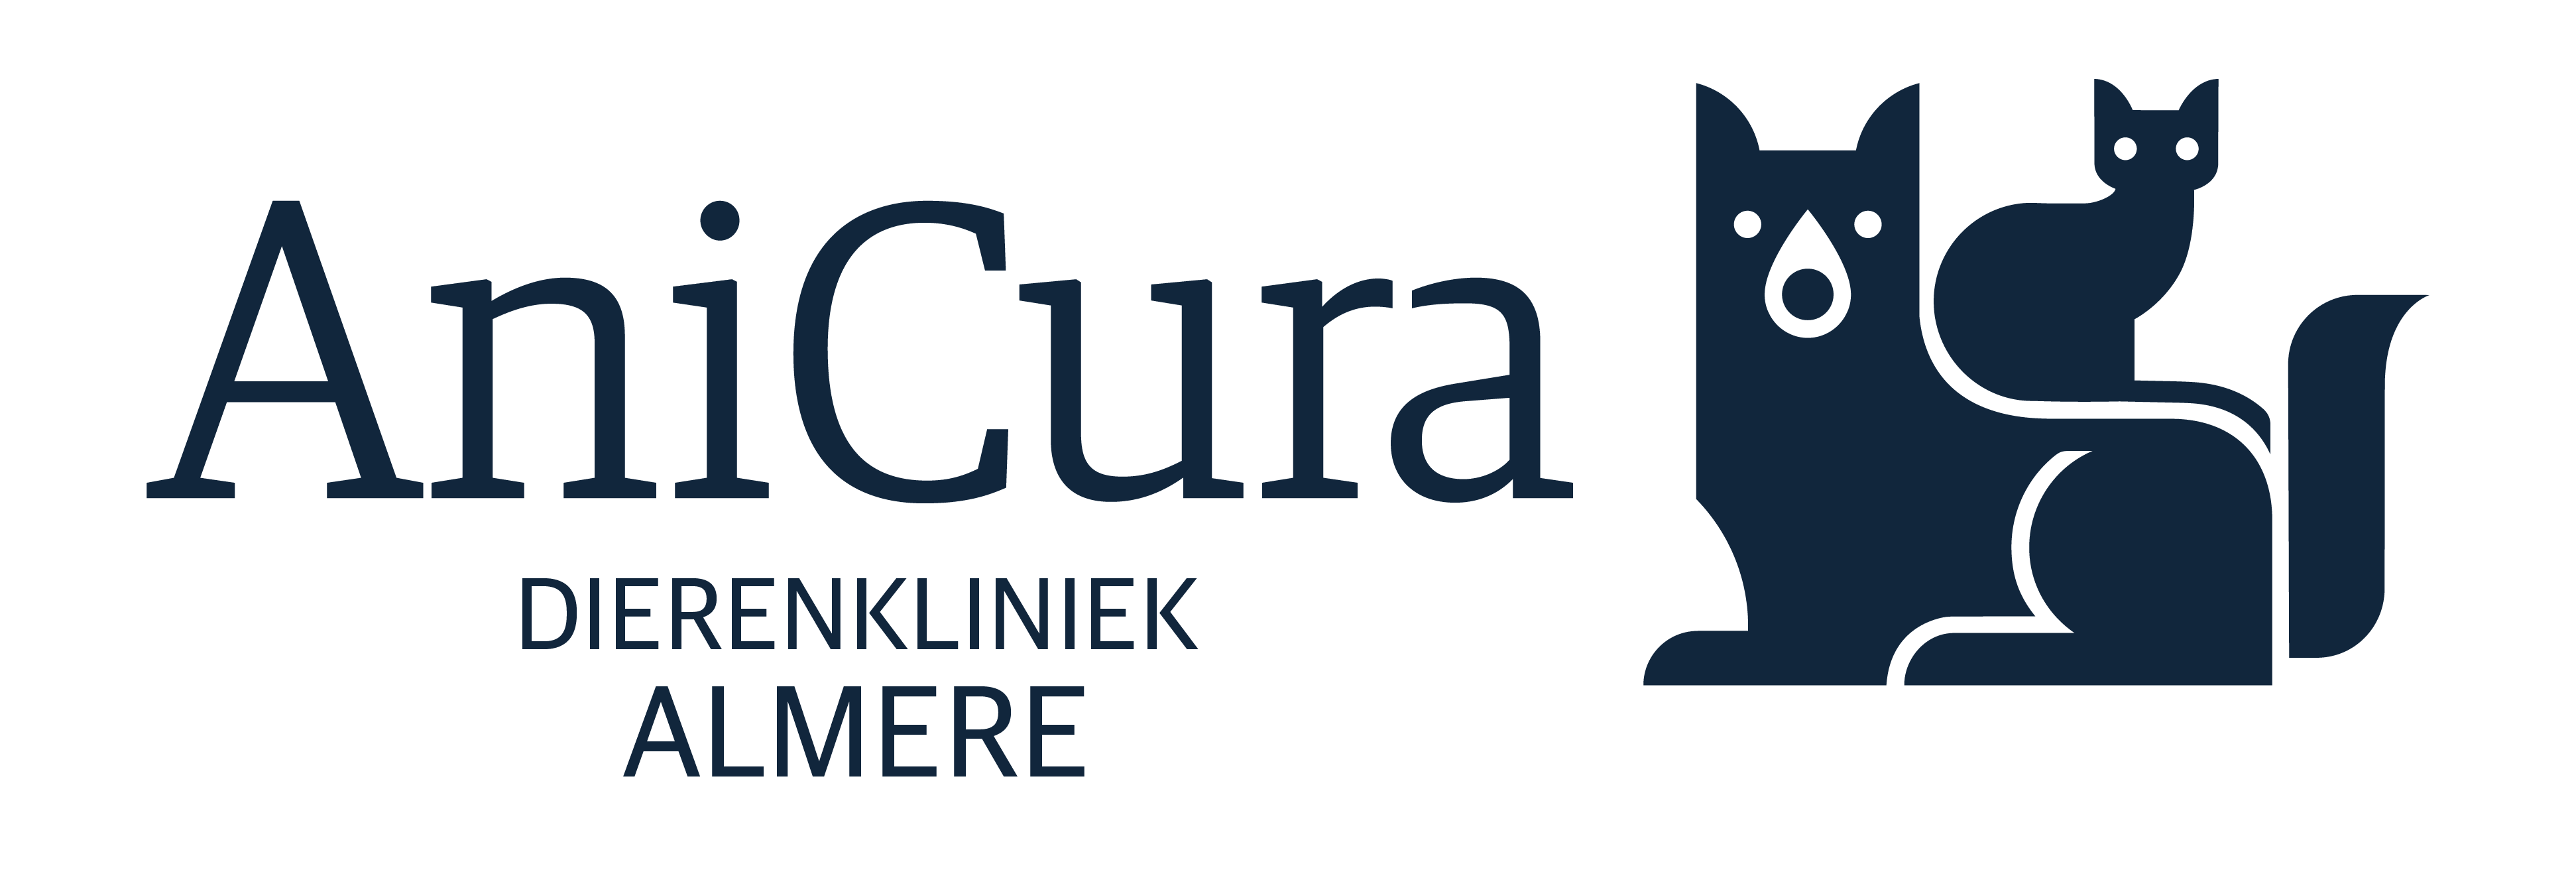 AniCura Almere logo